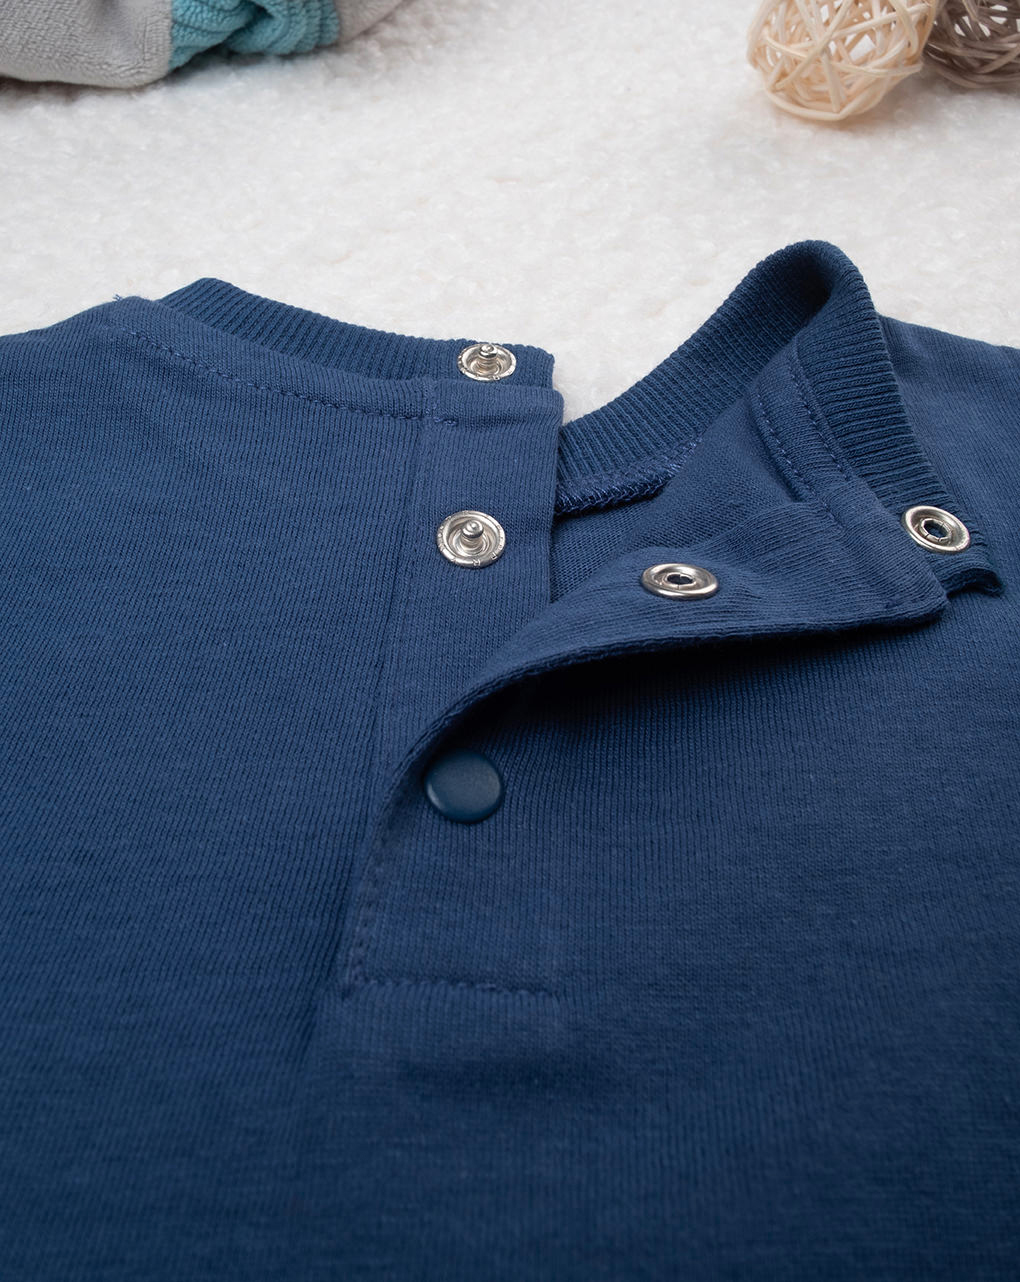 βρεφική μπλούζα μπλε με ζωάκια για αγόρι - Prénatal